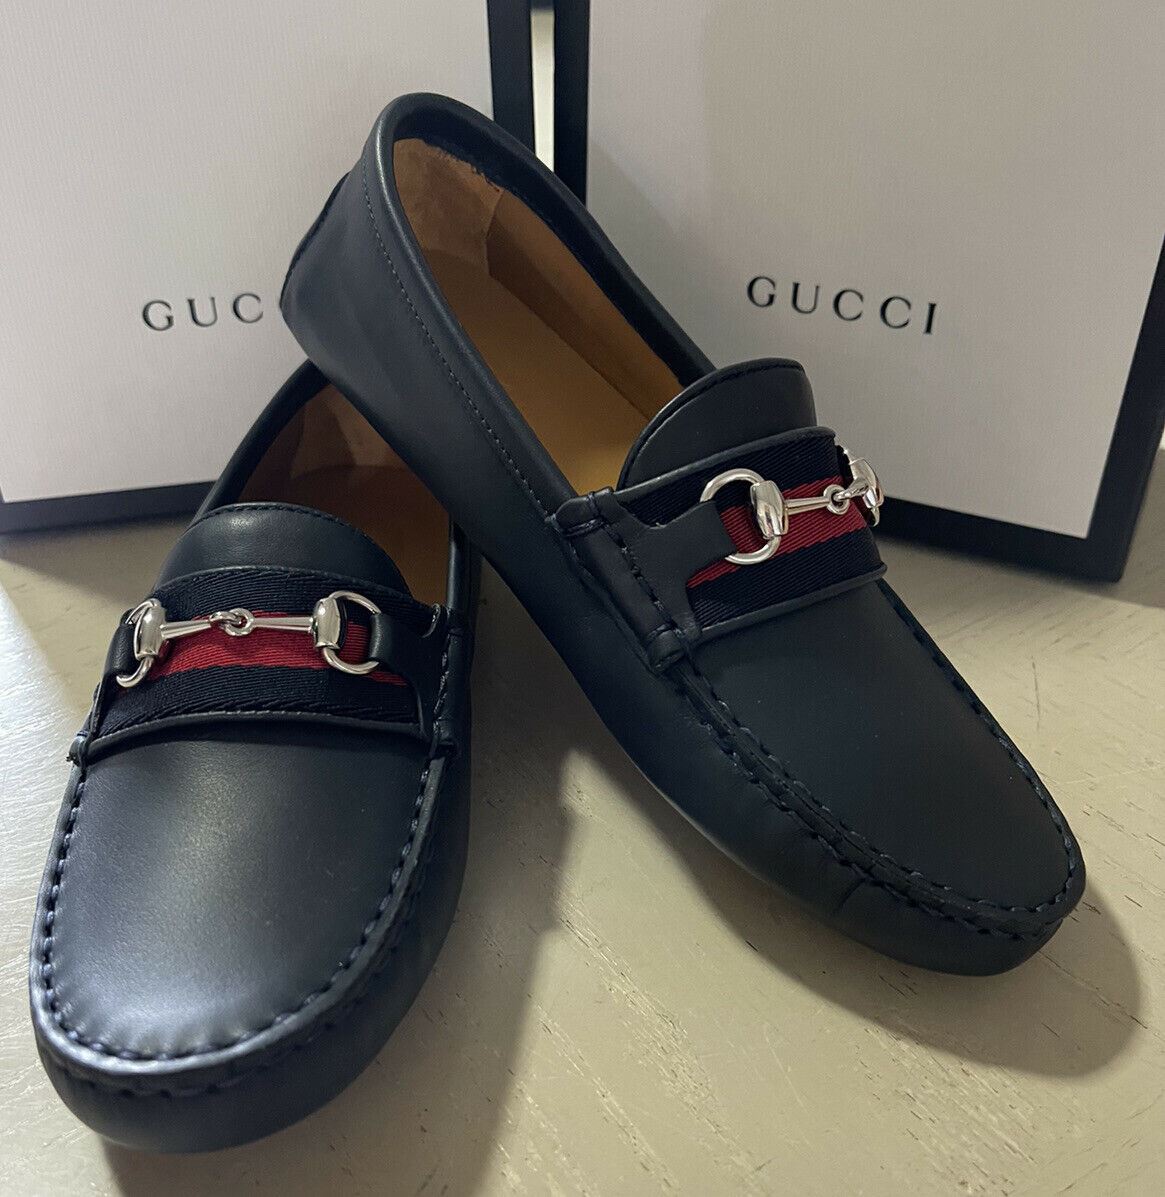 NIB Gucci Детские кожаные туфли для вождения для мальчиков, черные, размер 31/13, США, 6 лет